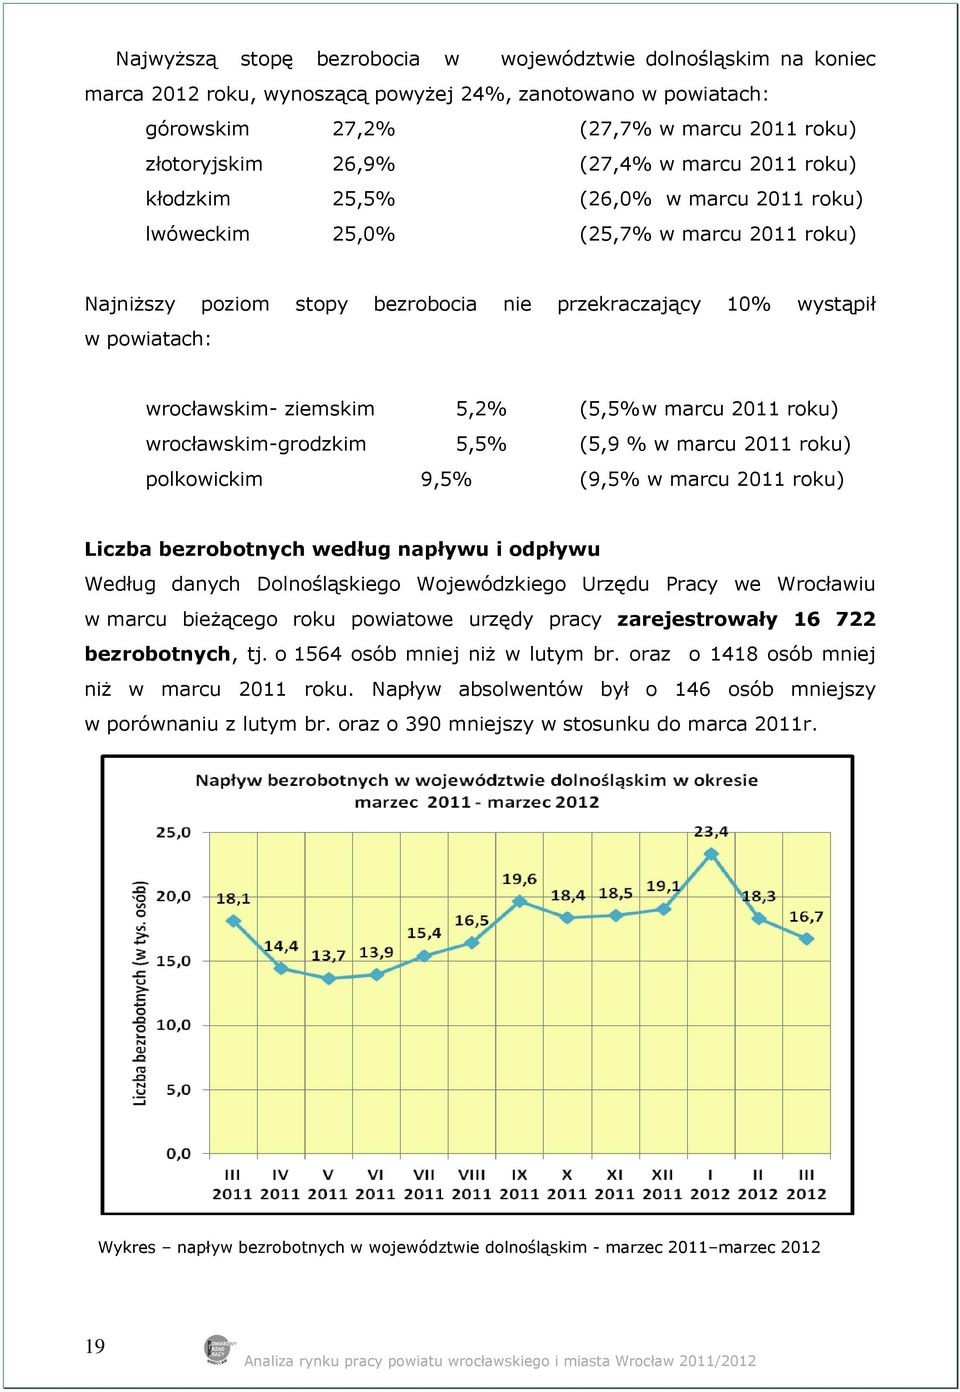 ziemskim 5,2% (5,5% w marcu 2011 roku) wrocławskim-grodzkim 5,5% (5,9 % w marcu 2011 roku) polkowickim 9,5% (9,5% w marcu 2011 roku) Liczba bezrobotnych według napływu i odpływu Według danych